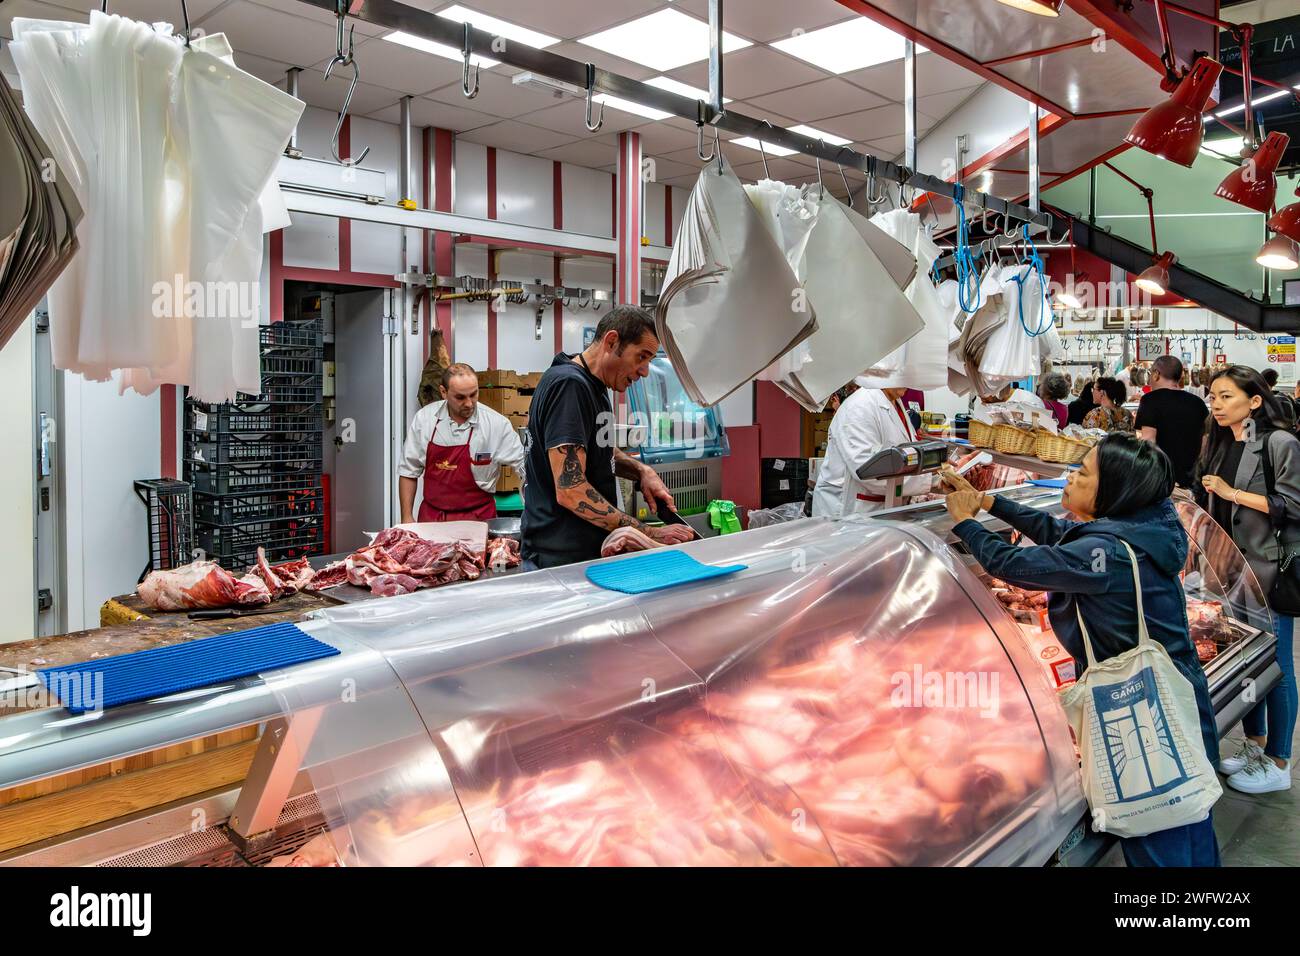 Les gens achètent de la viande dans une boucherie à Florence Mercato Centrale, un marché animé et populaire de produits frais à Florence, en Italie Banque D'Images